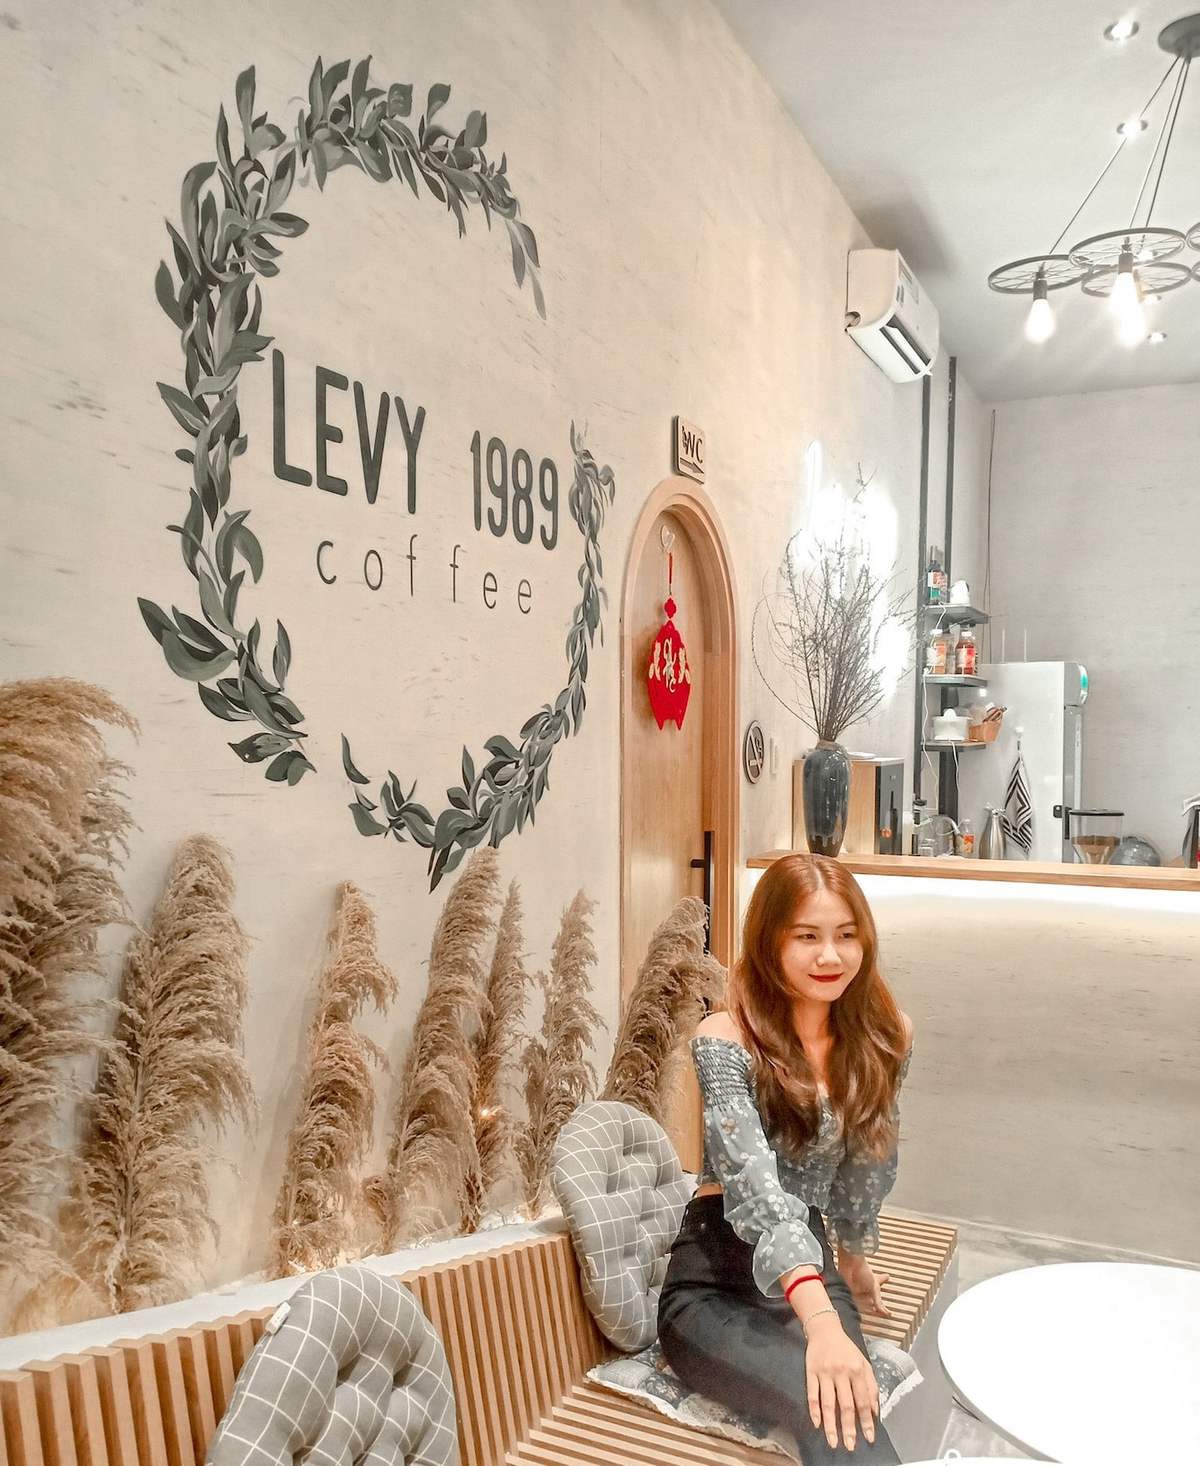 Dừng chân tại Levy 1989 Coffee tìm không gian thoáng đãng giữa lòng thành phố 10